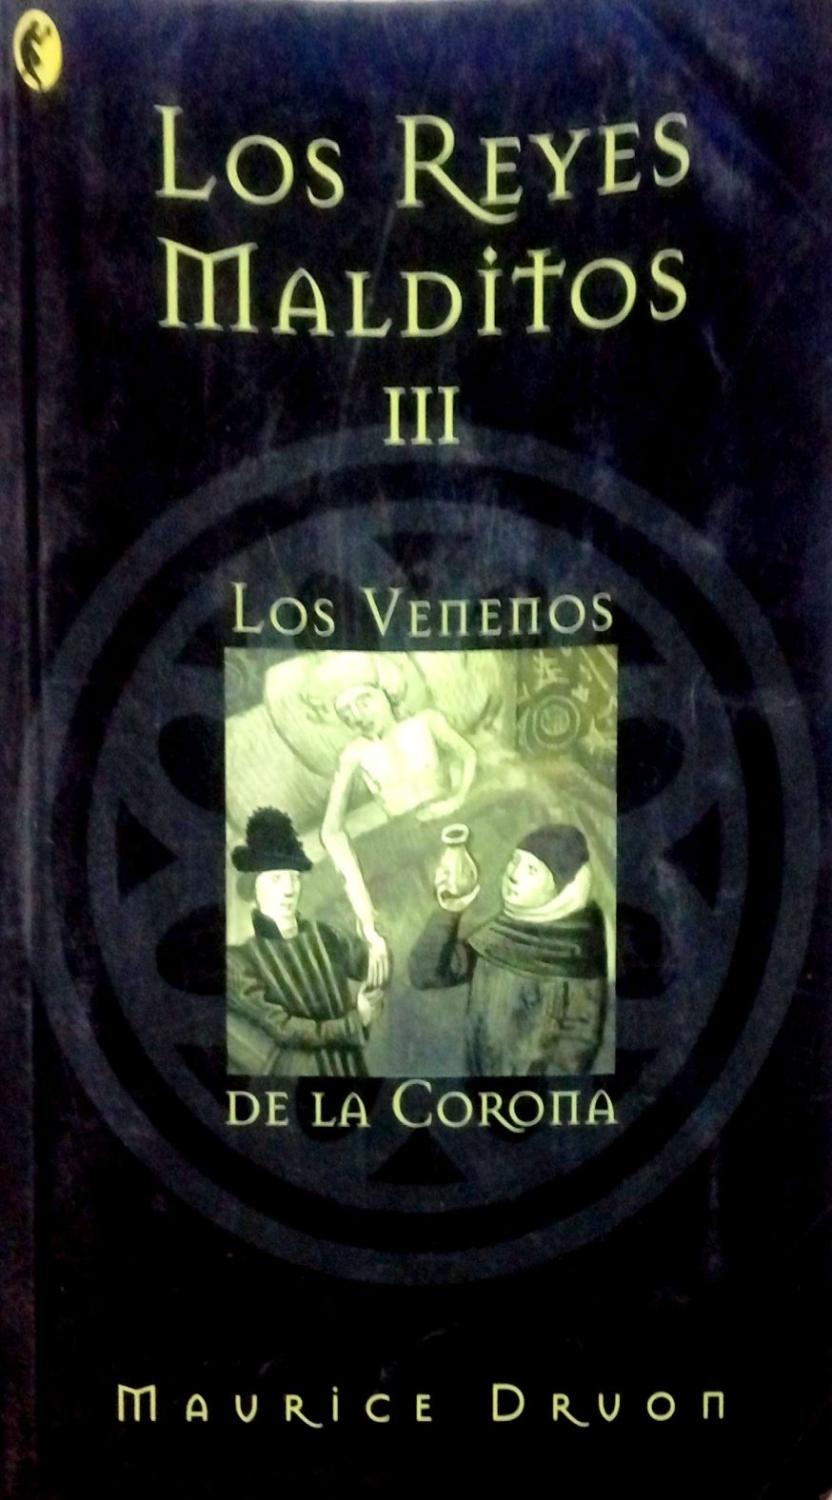 SOLA, SOLTERITA Y SIN APURO (Spanish Edition) - BARRERO, SILVANA